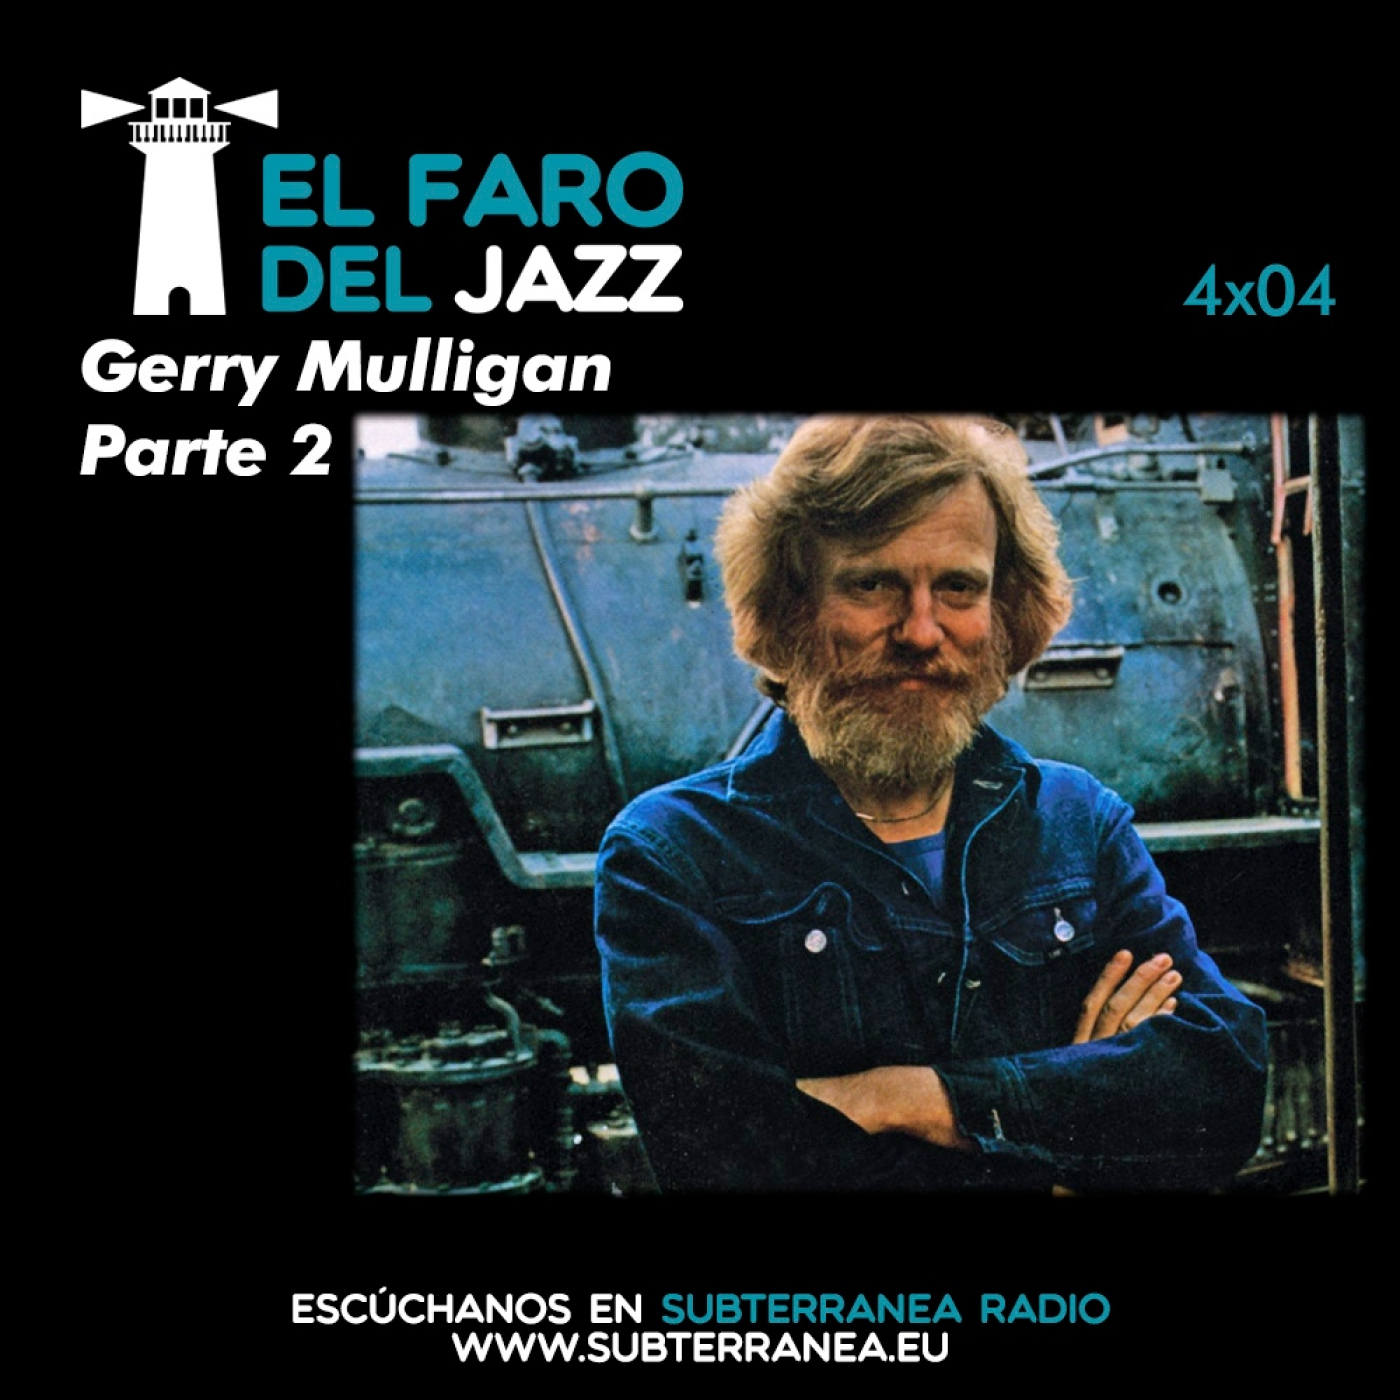 El faro del jazz - 4x04 - Gerry Mulligan (Parte 2)